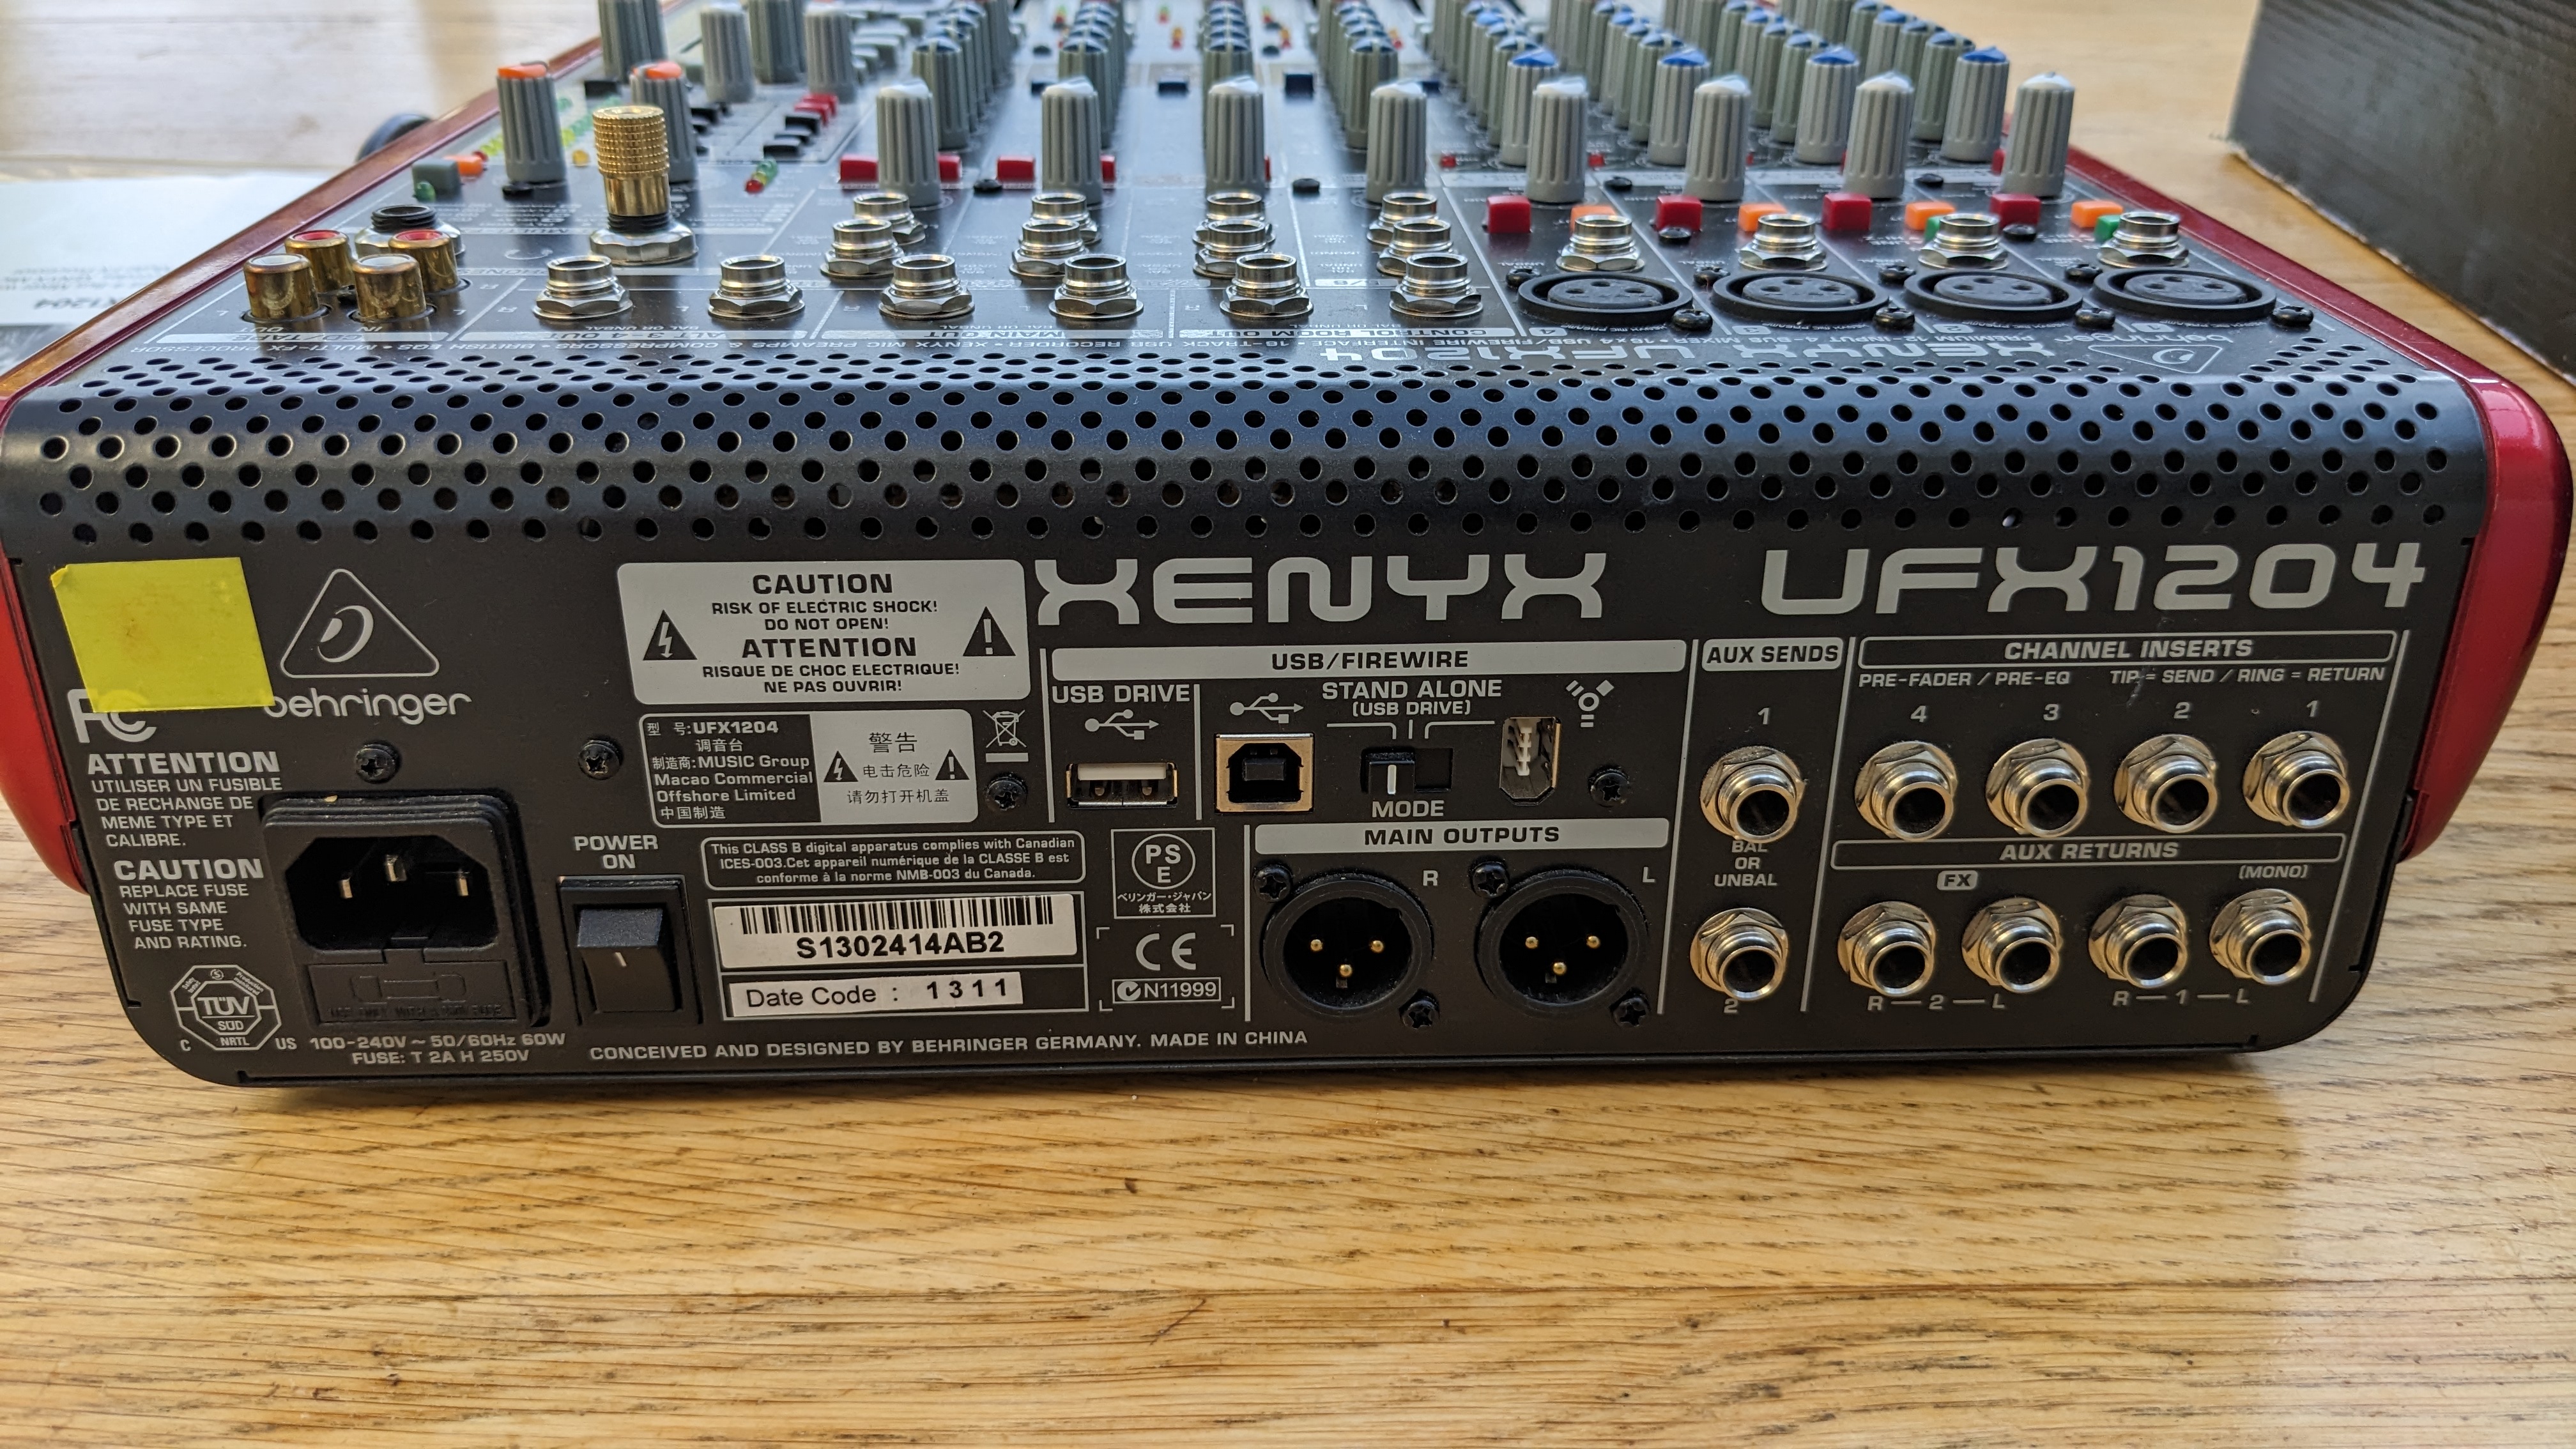 Table de mixage Behringer UFX1204 12 entrées USB FIREWIRE